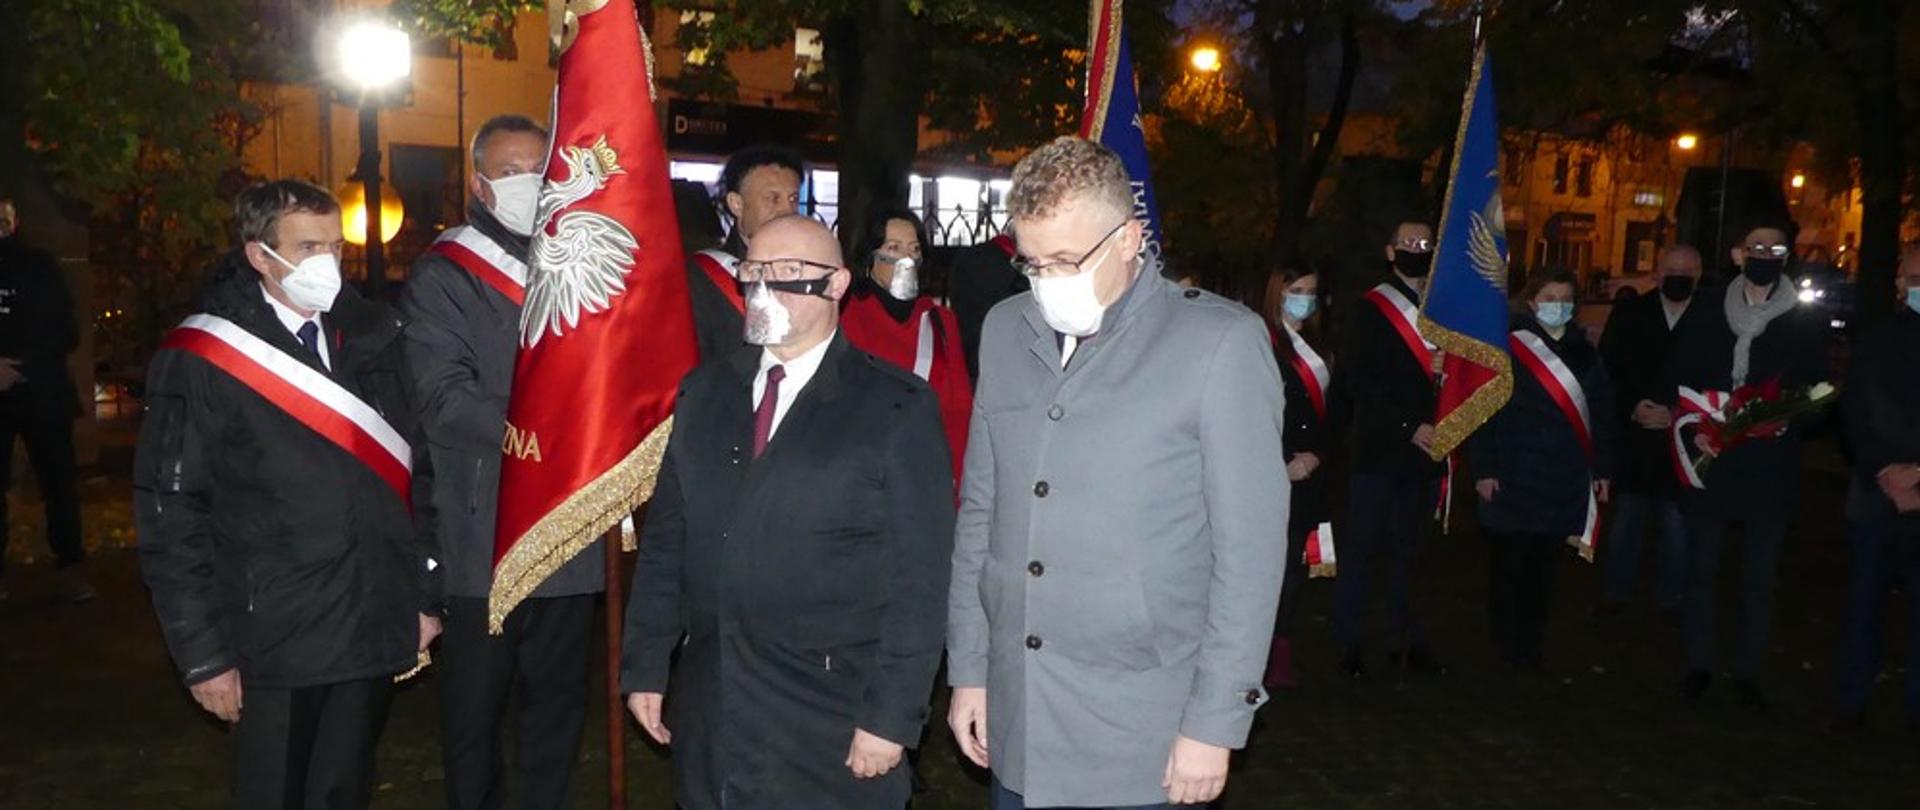 Starosta Grzegorz Piec i Członek Zarządu Dariusz Banasik przed wejściem do kościoła